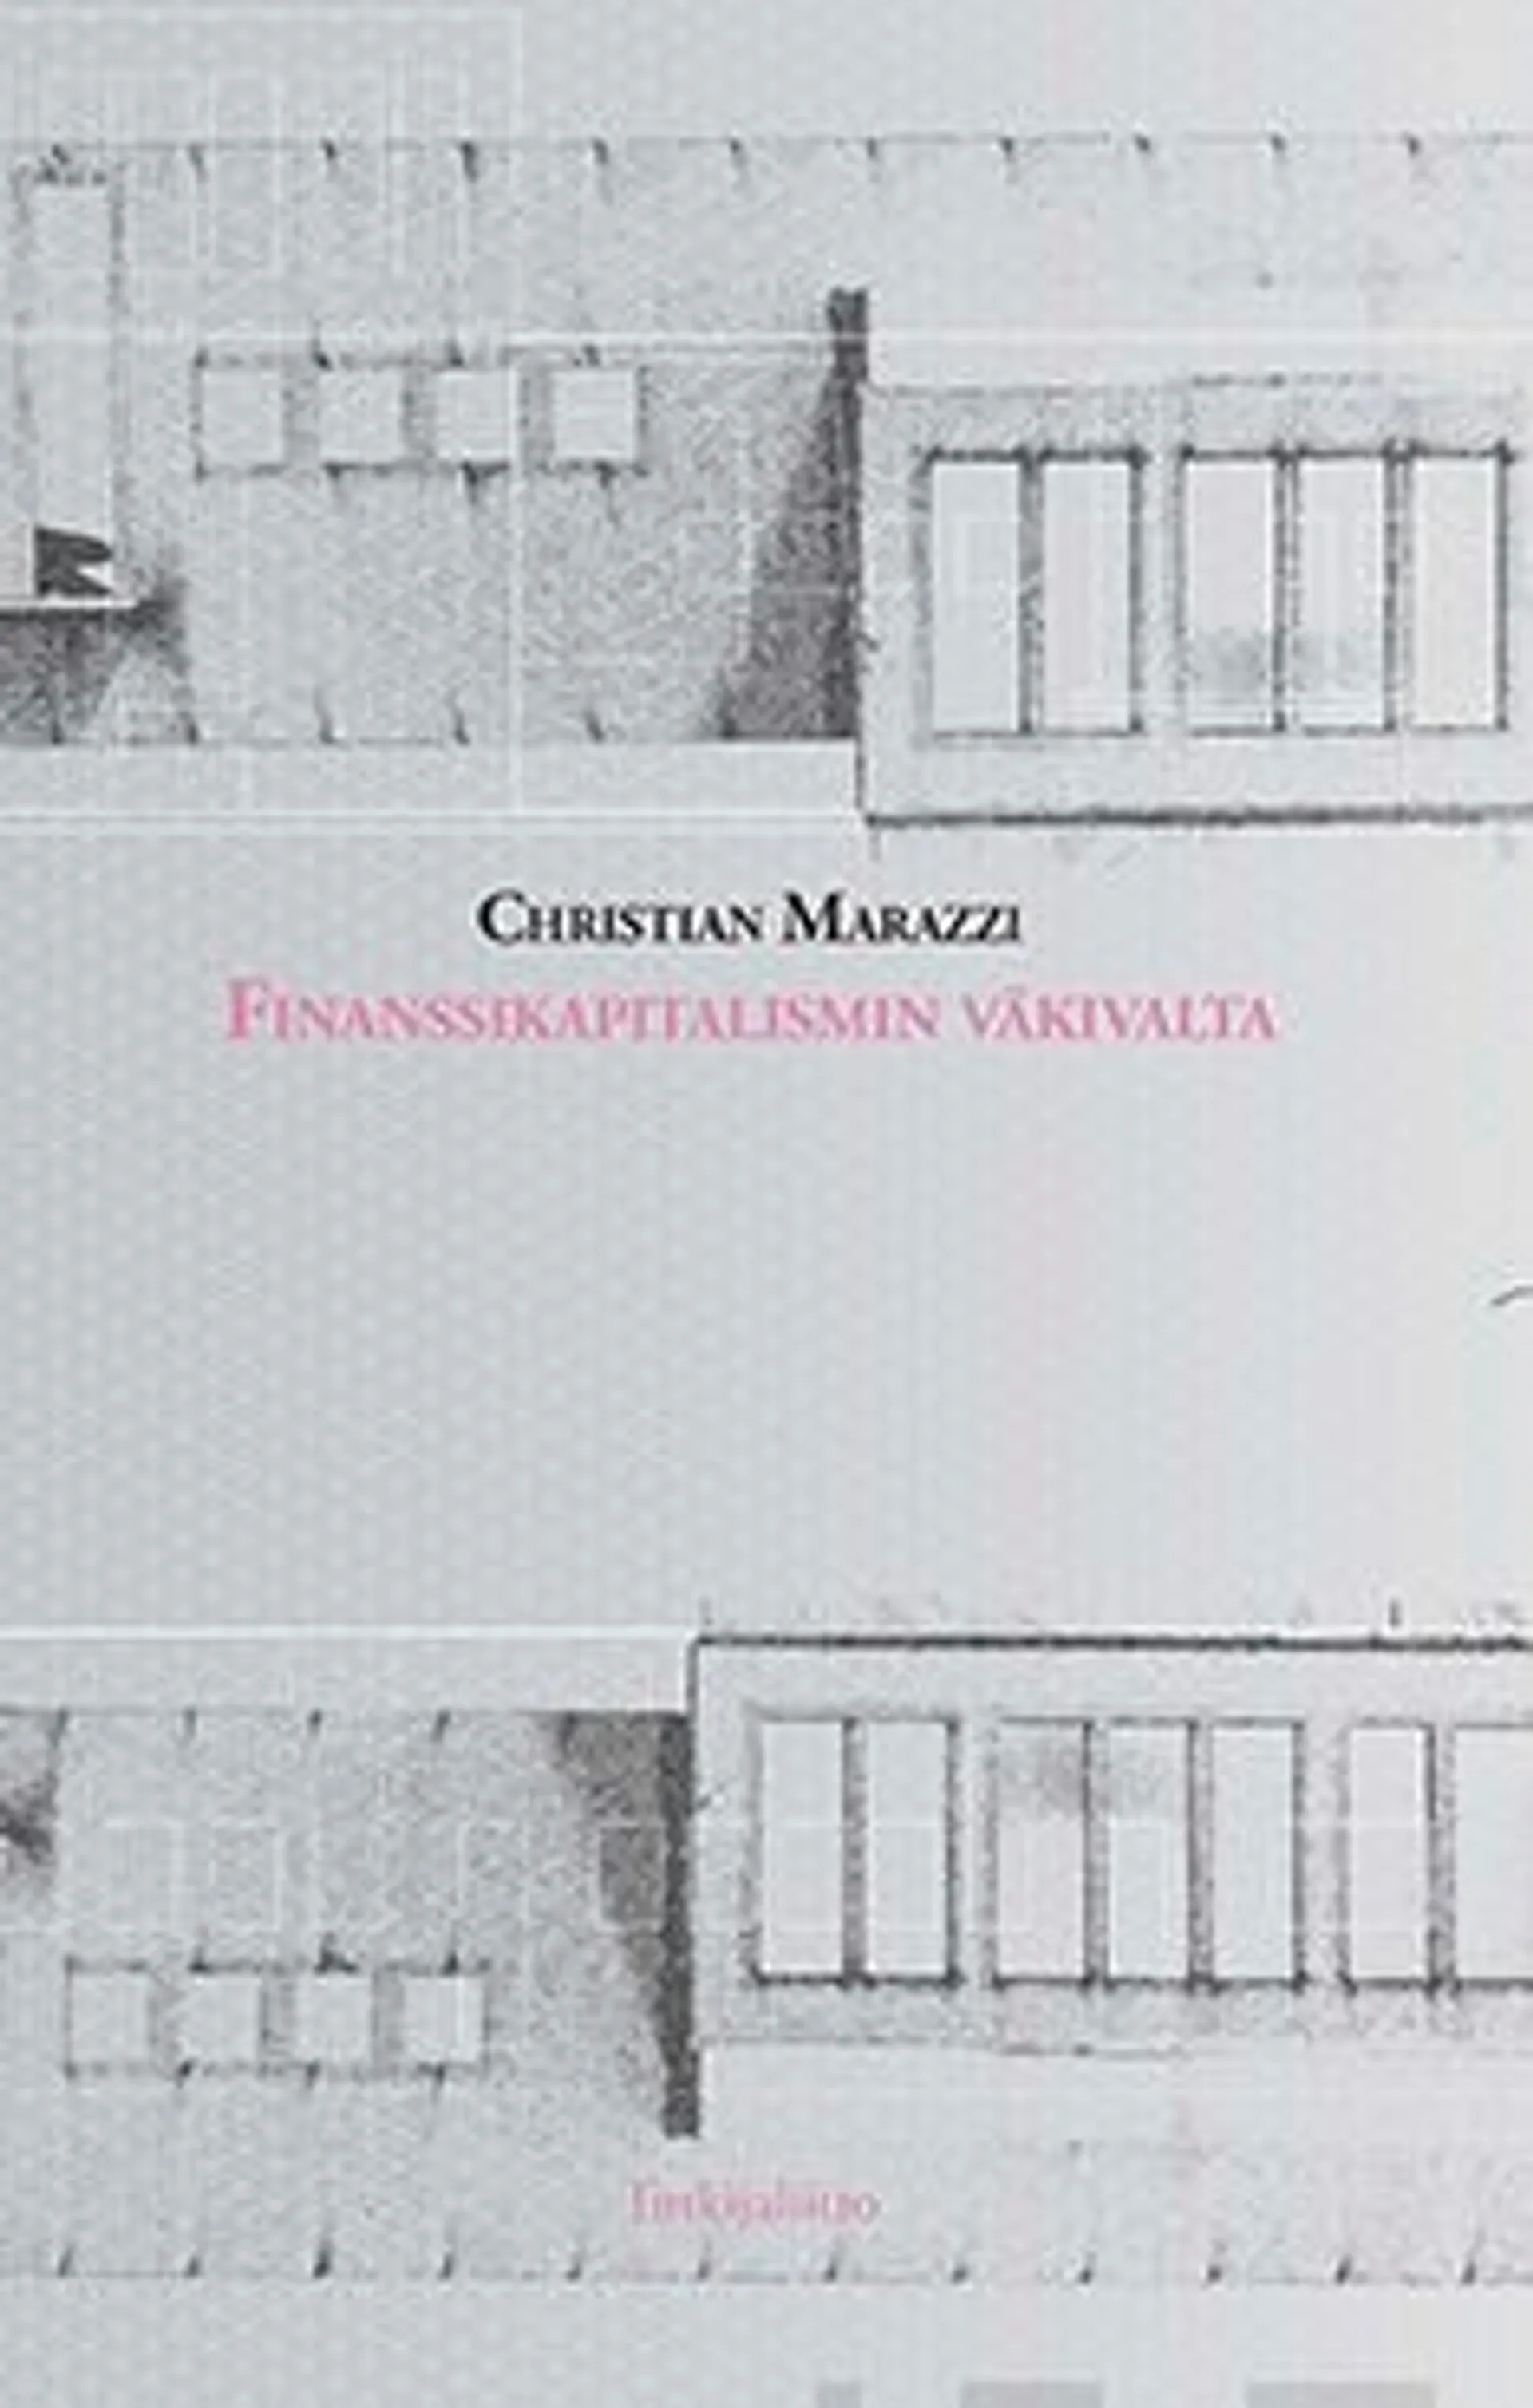 Marazzi, Finanssikapitalismin väkivalta